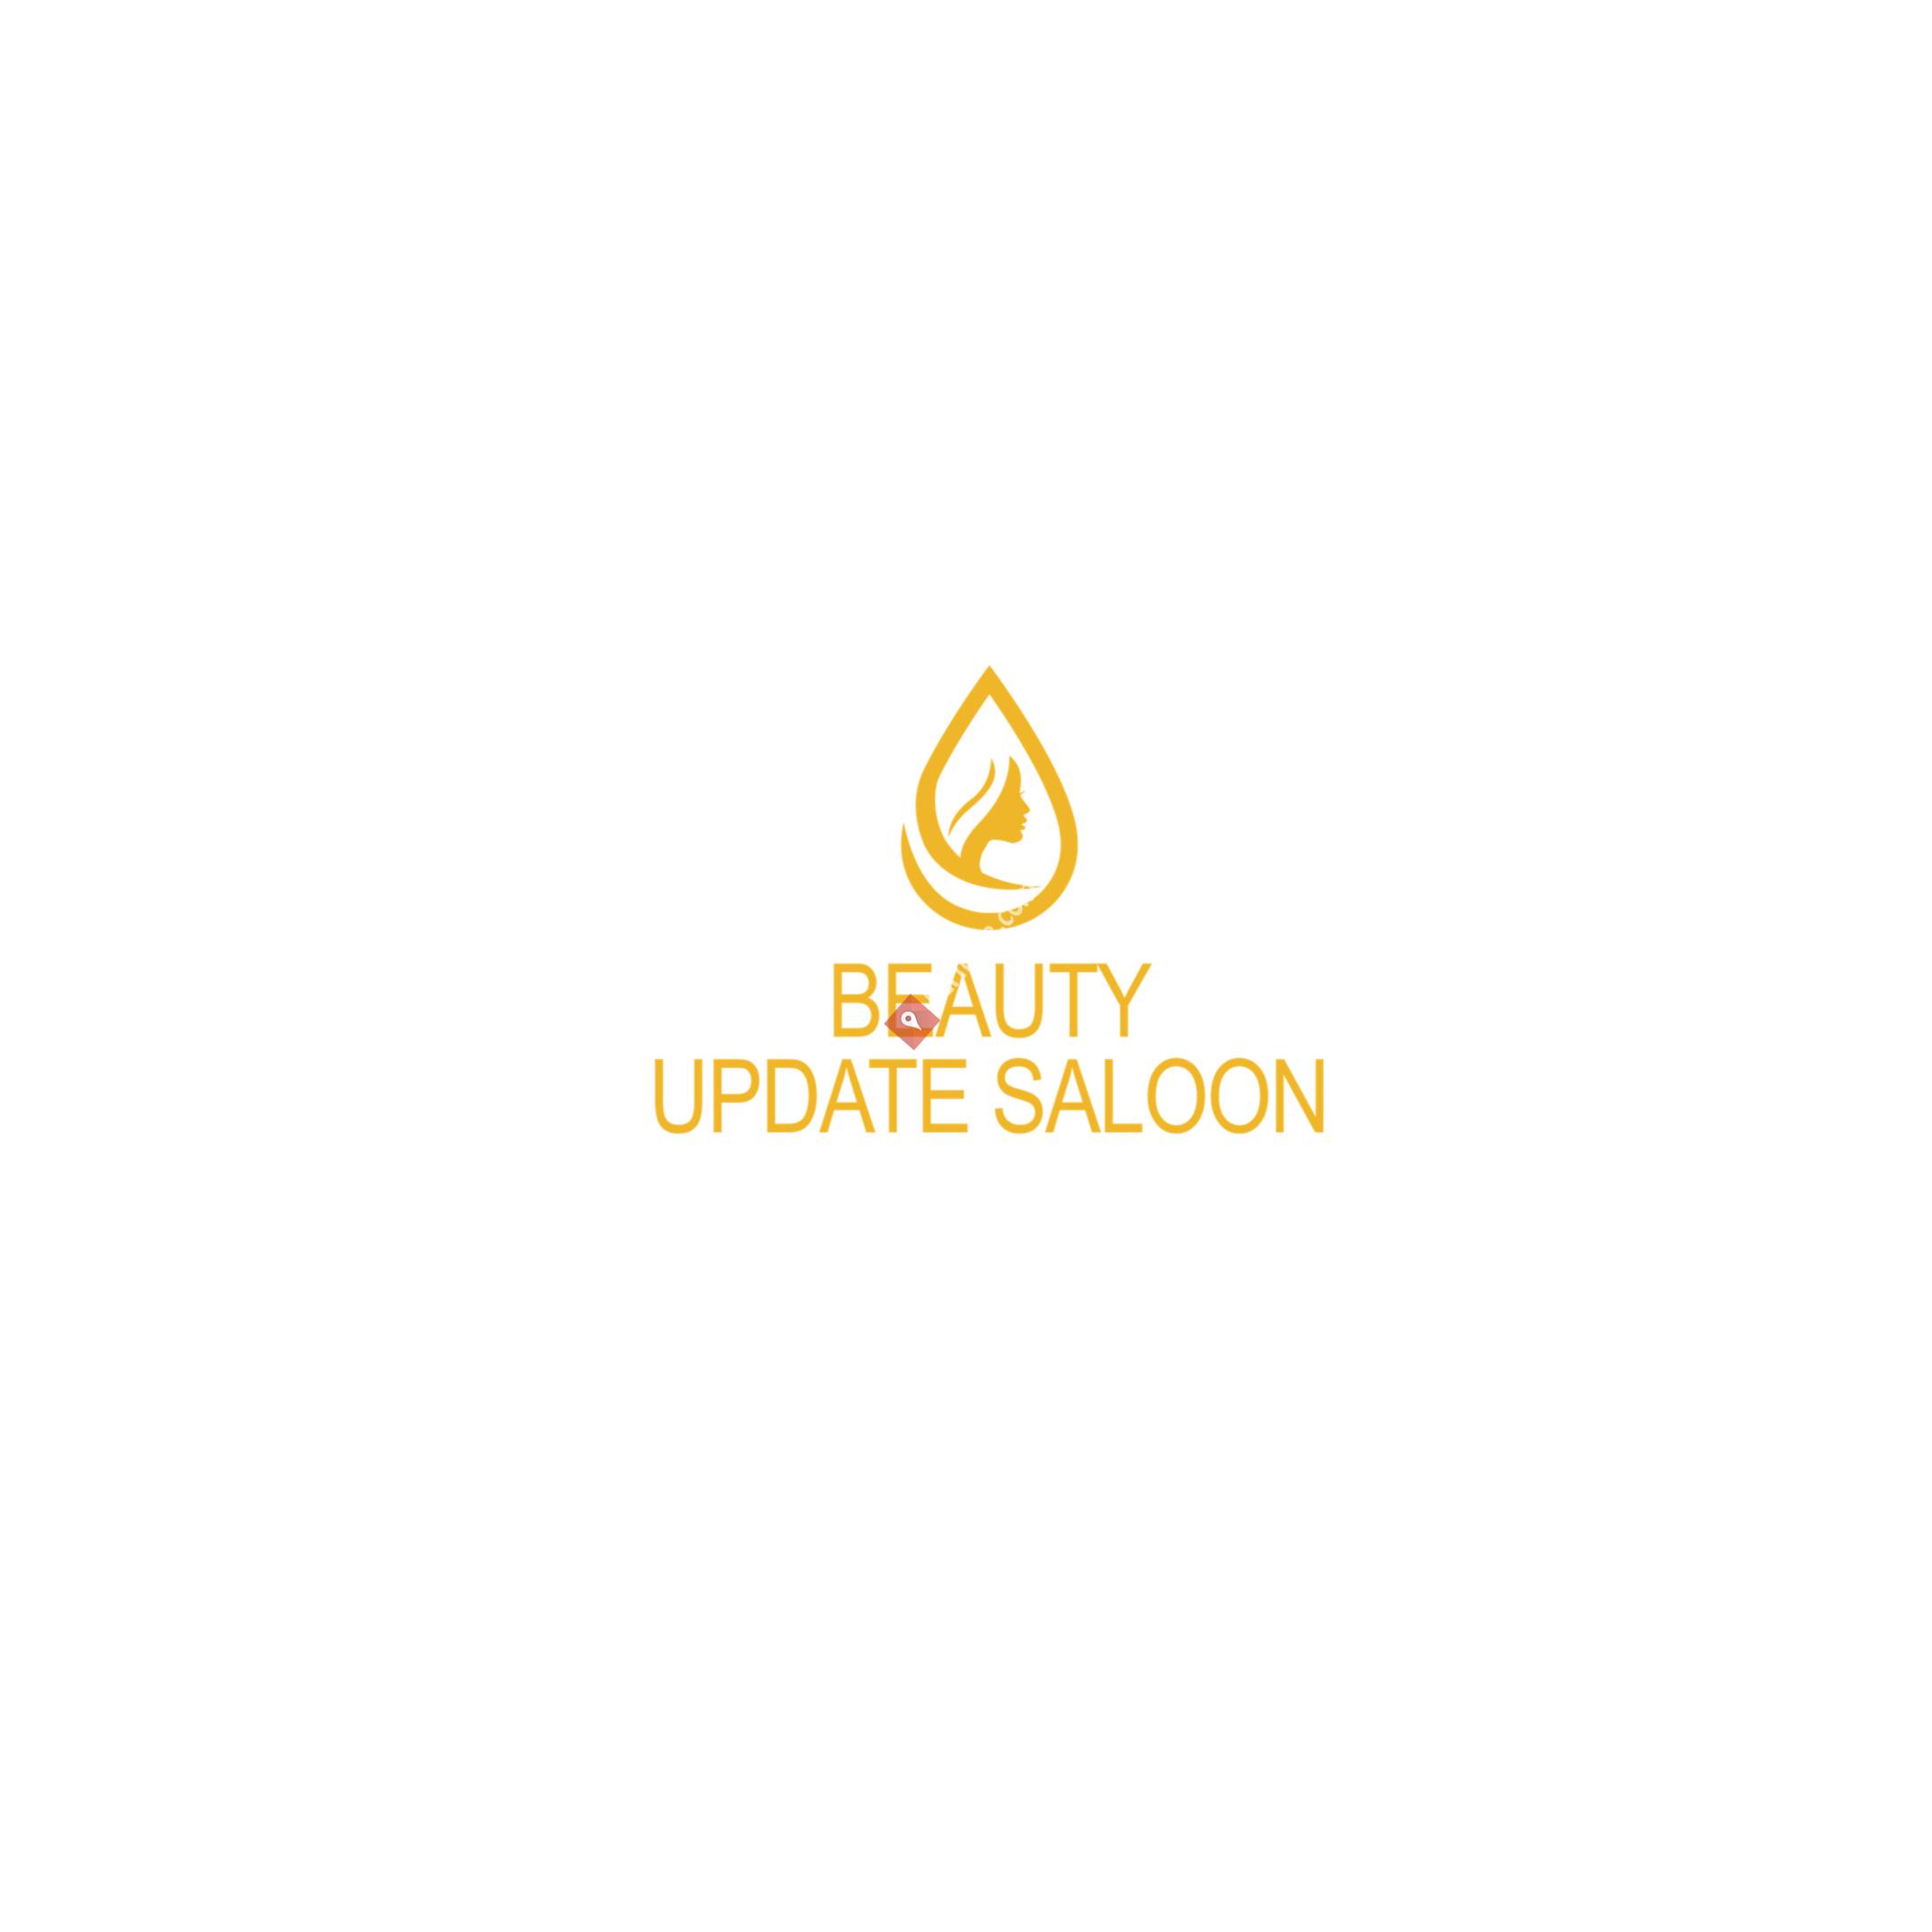 Beauty update saloon